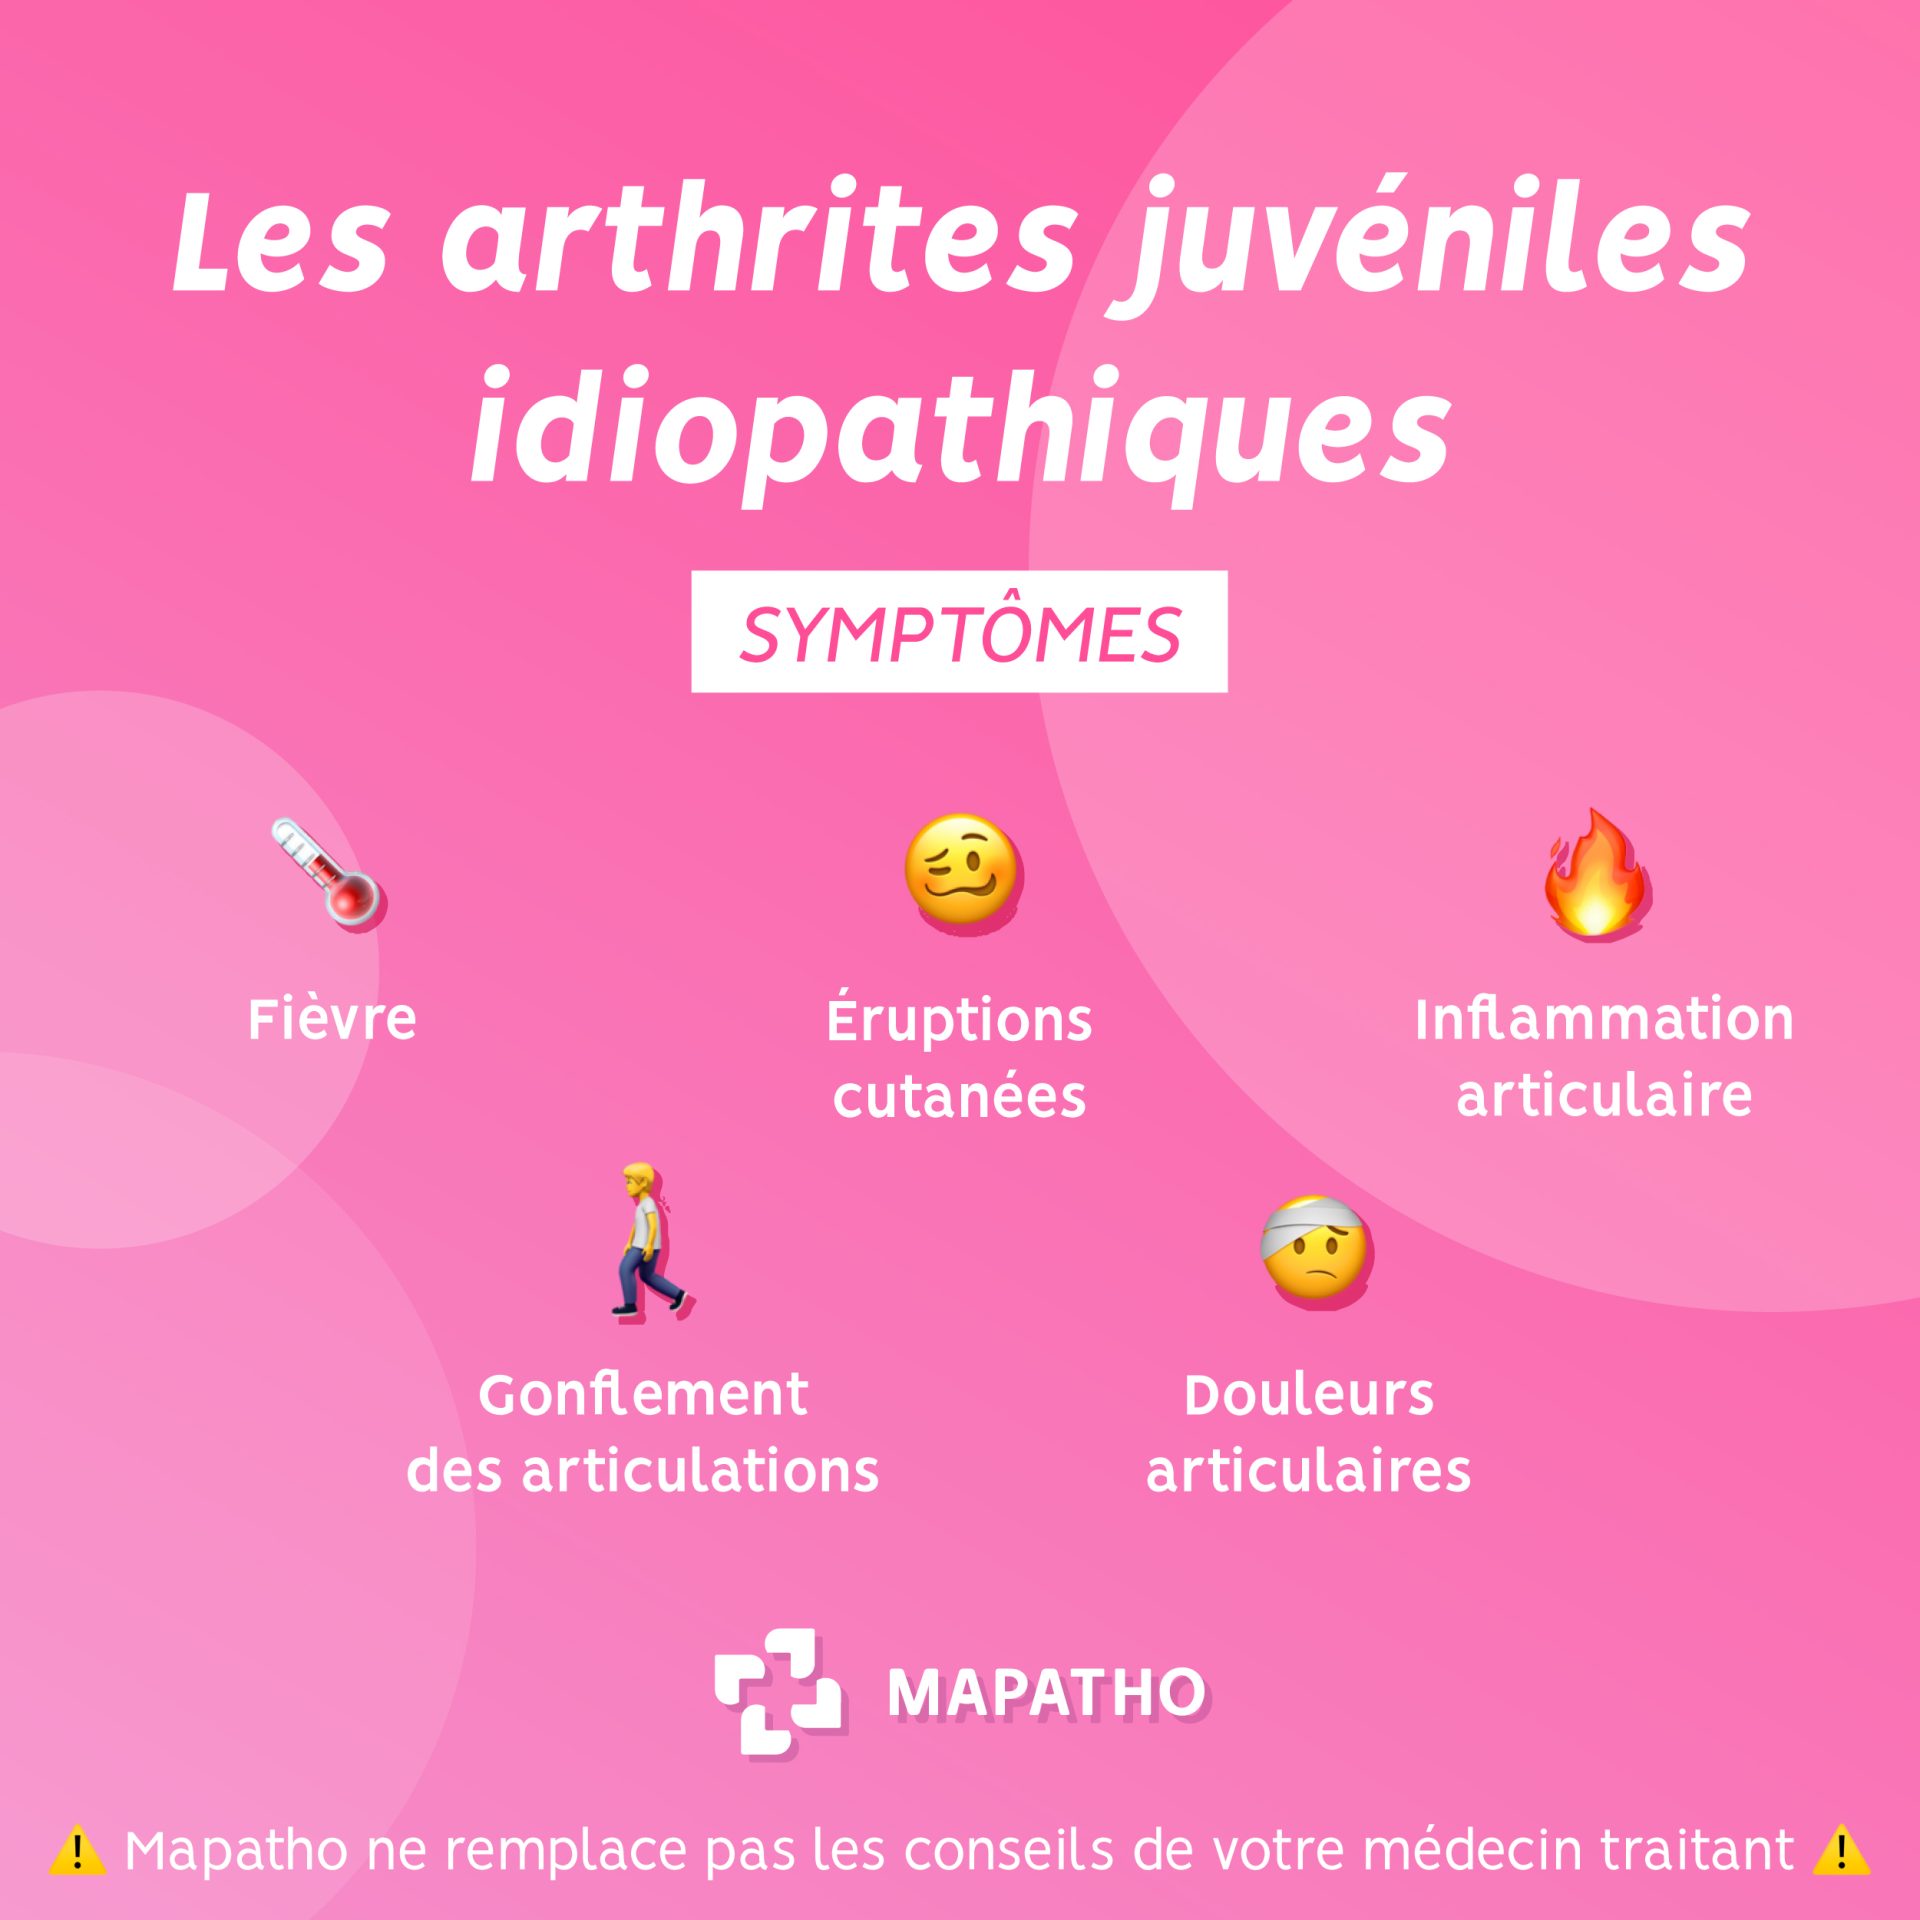 Les symptomes de l'arthrites juveniles idiopathiques